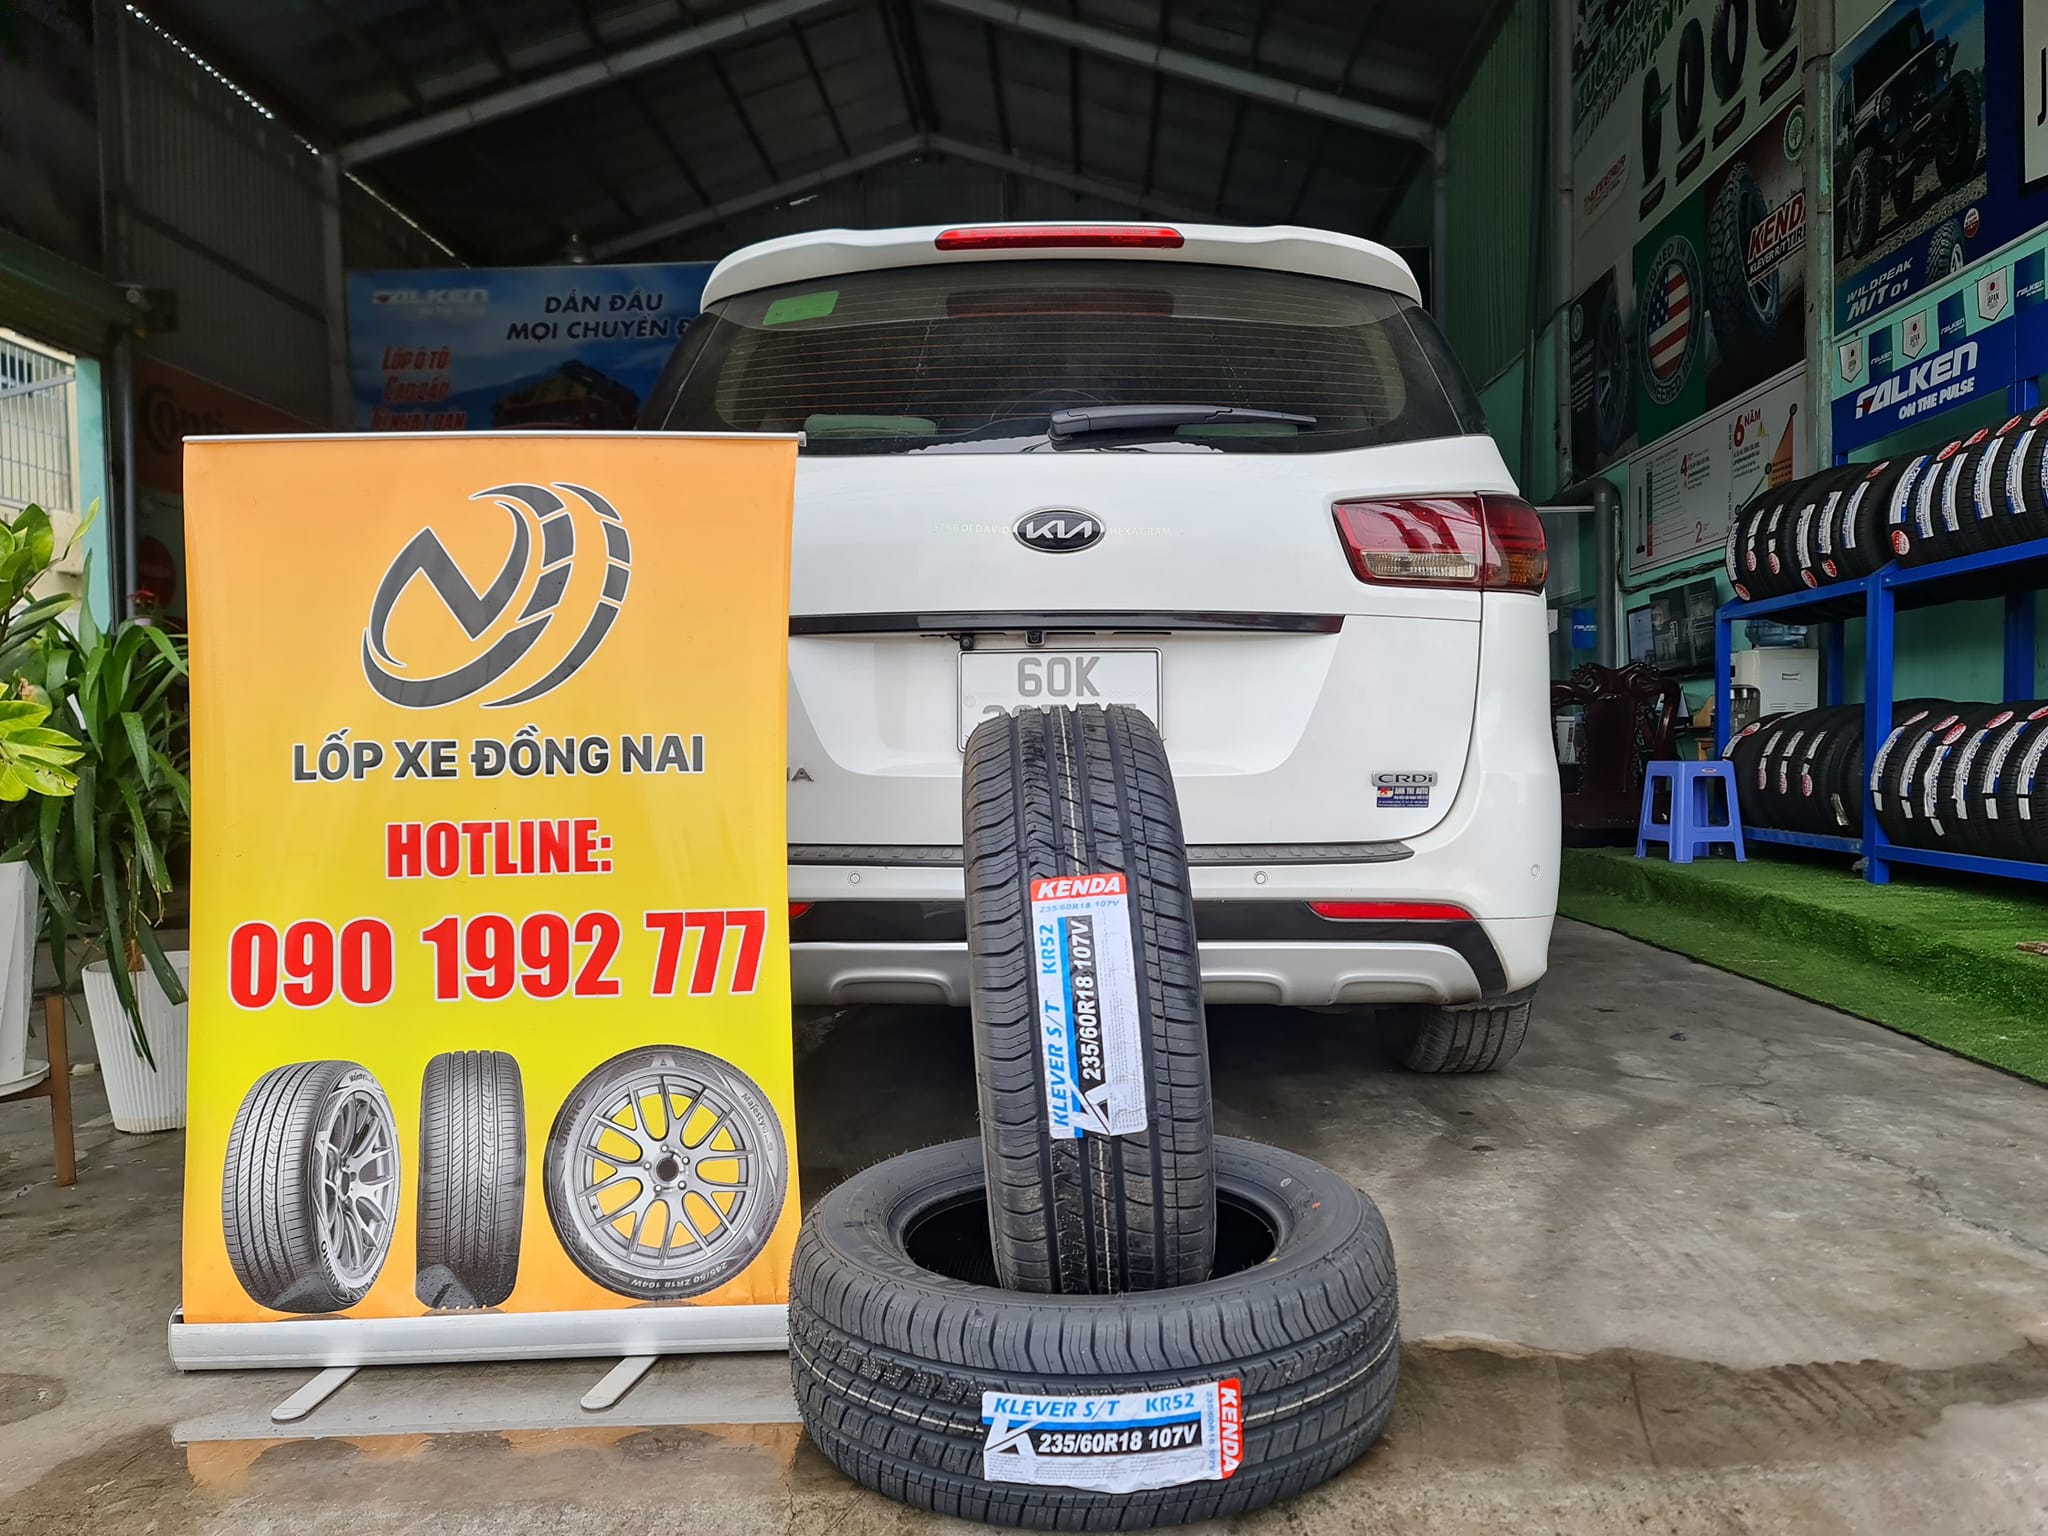 TƯ VẤN : Thay lốp xe Kia Sedona ở Long Thành, Đồng Nai.